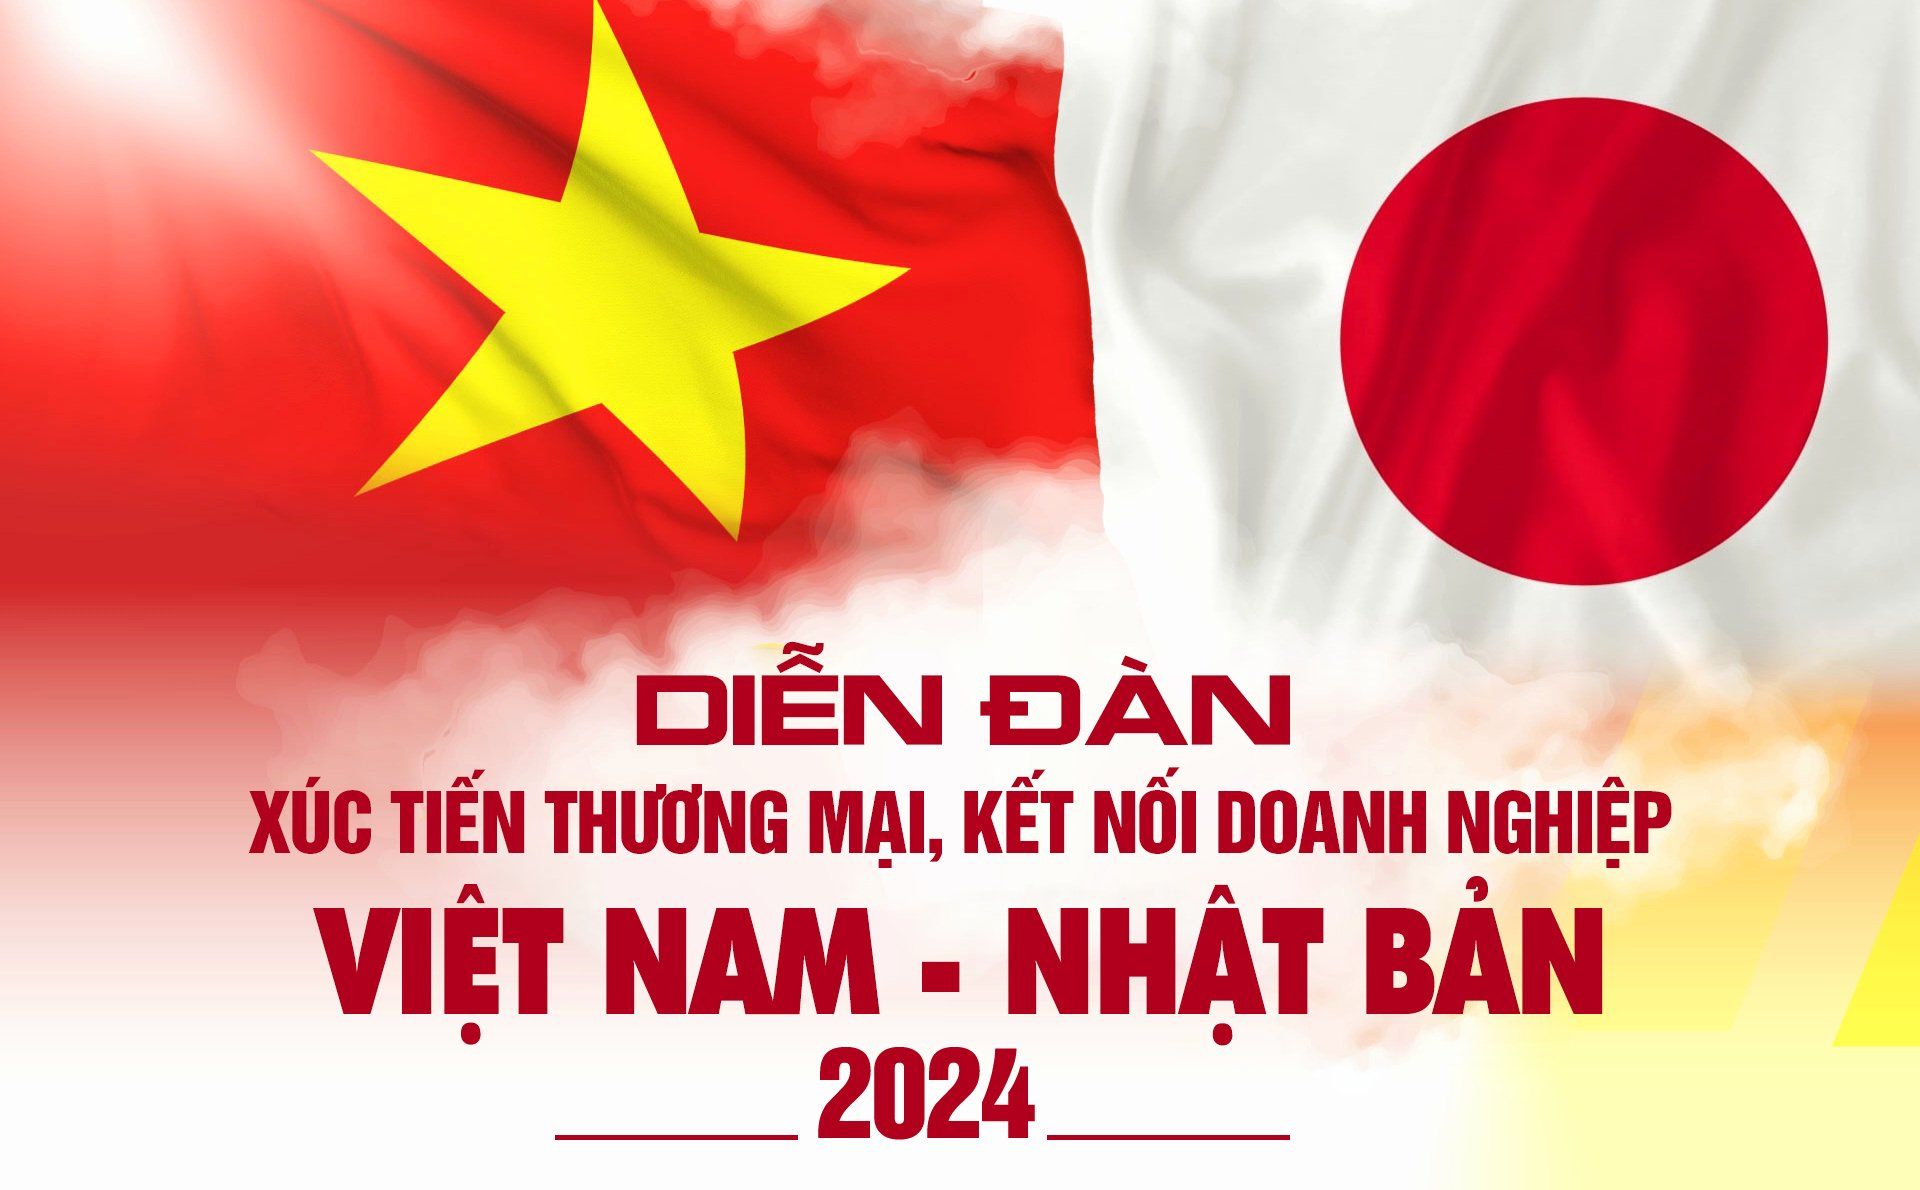 Diễn đàn xúc tiến thương mại, kết nối doanh nghiệp Việt Nam – Nhật Bản 